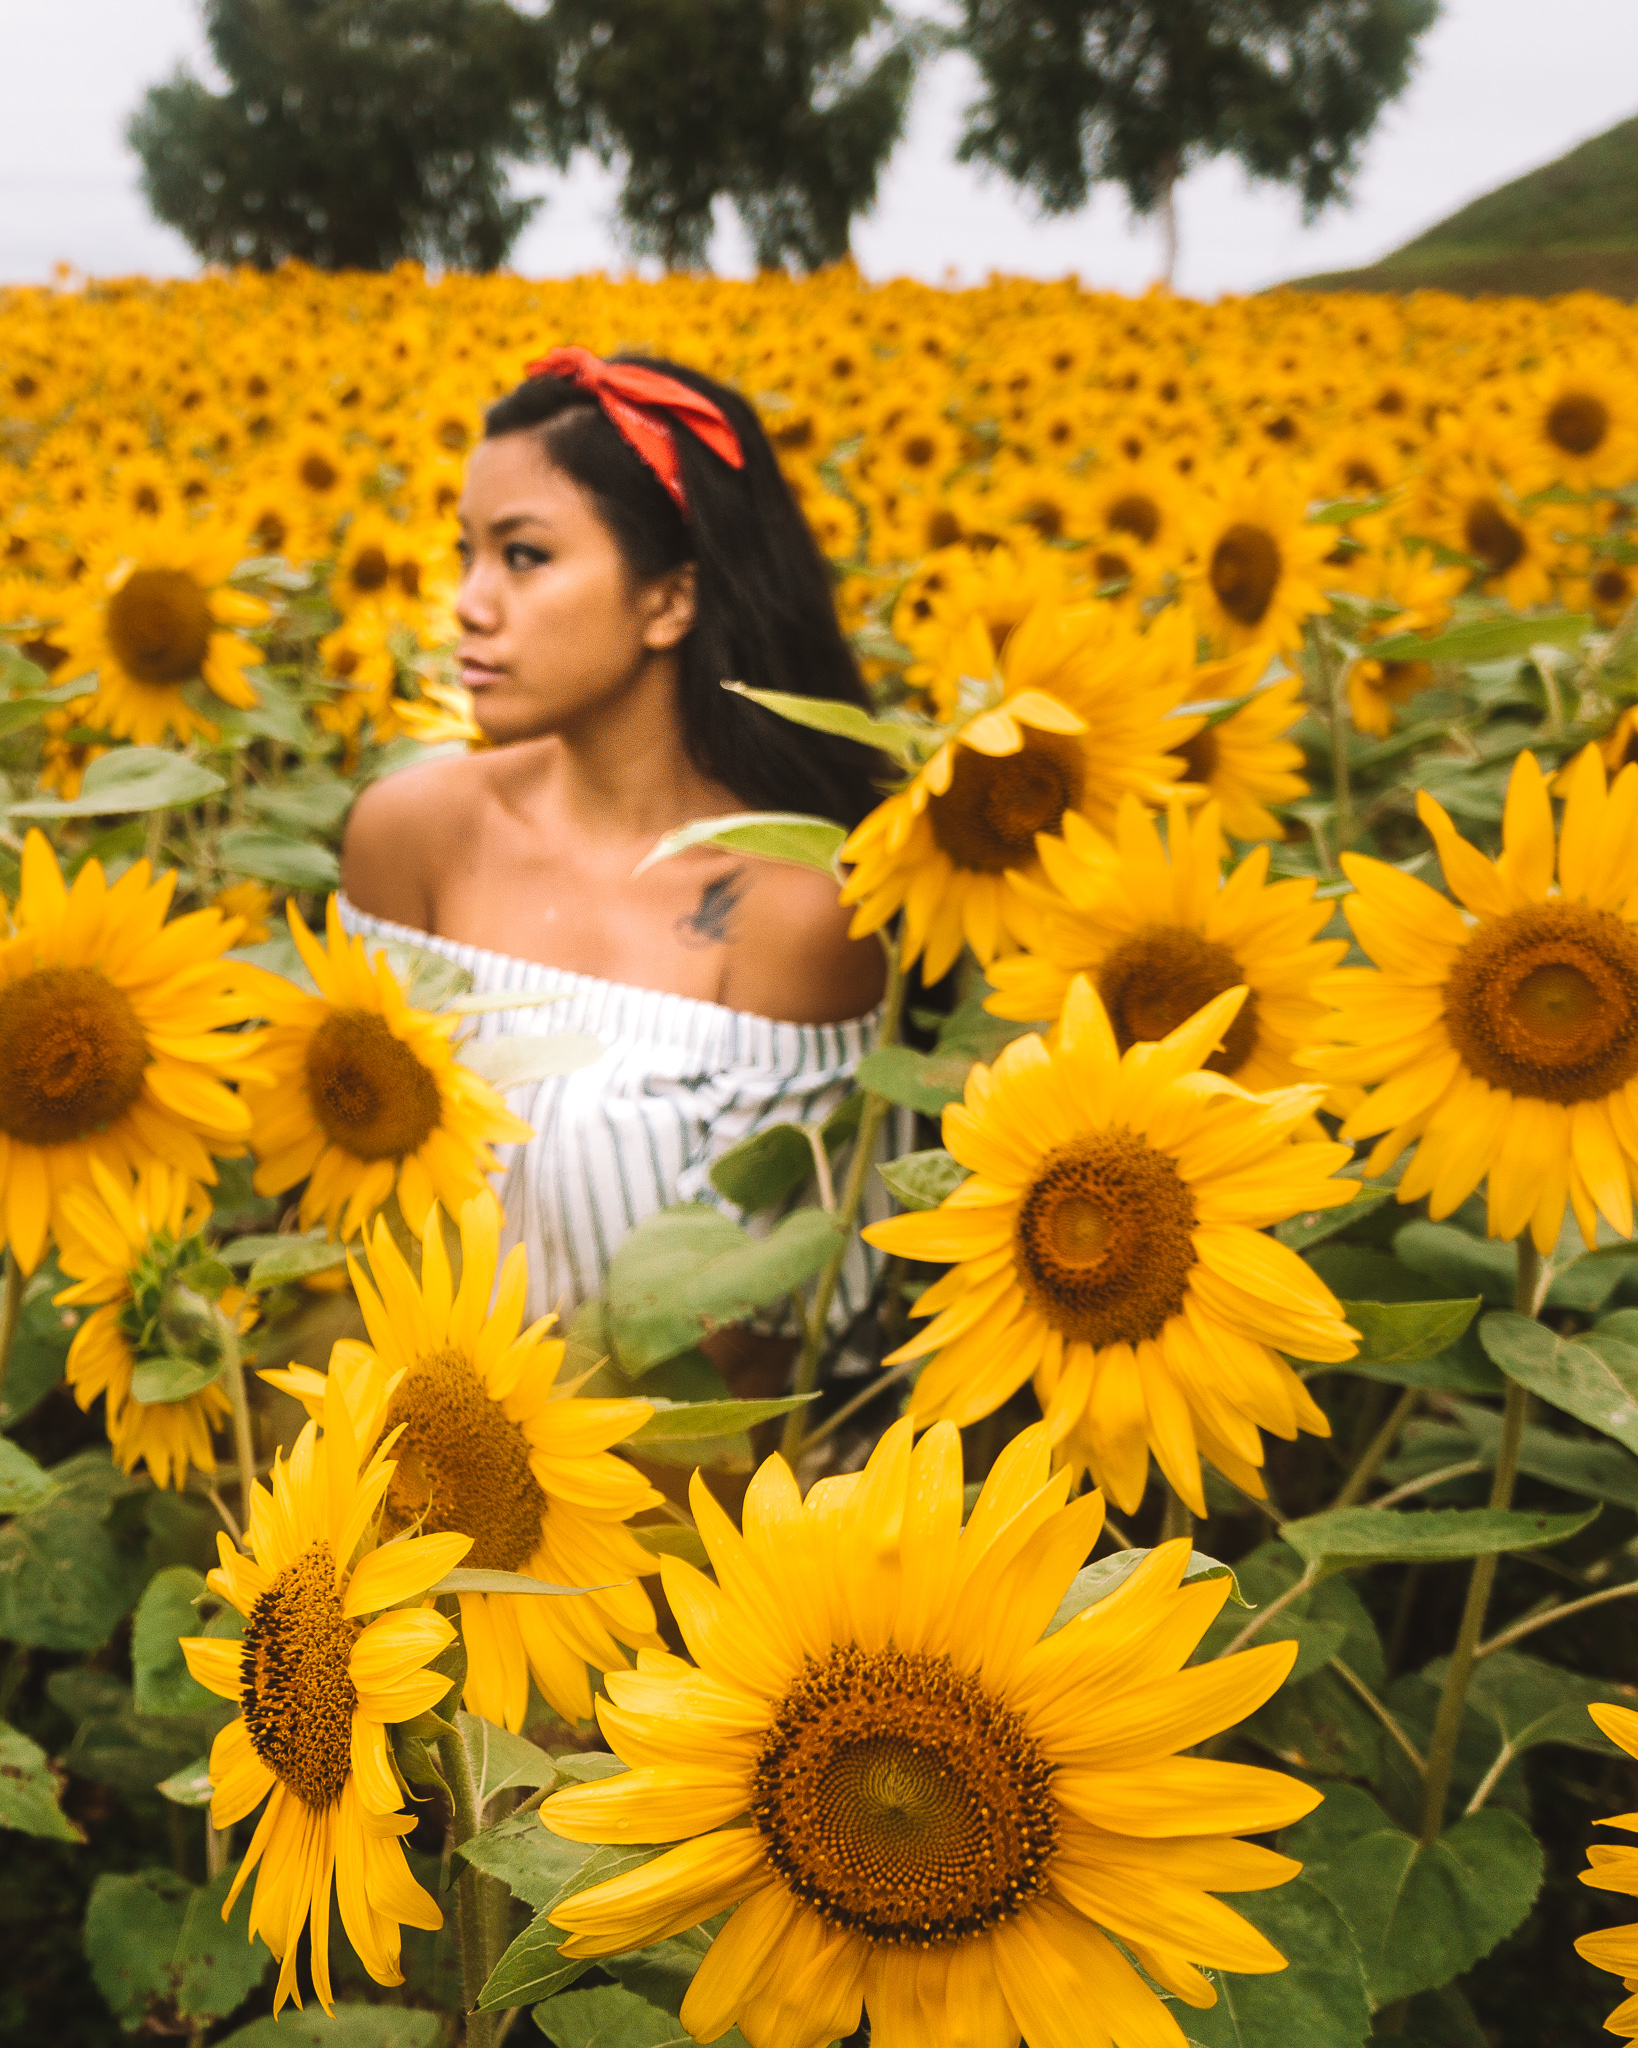 A girl in a sunflower field in Biei, Hokkaido in summer